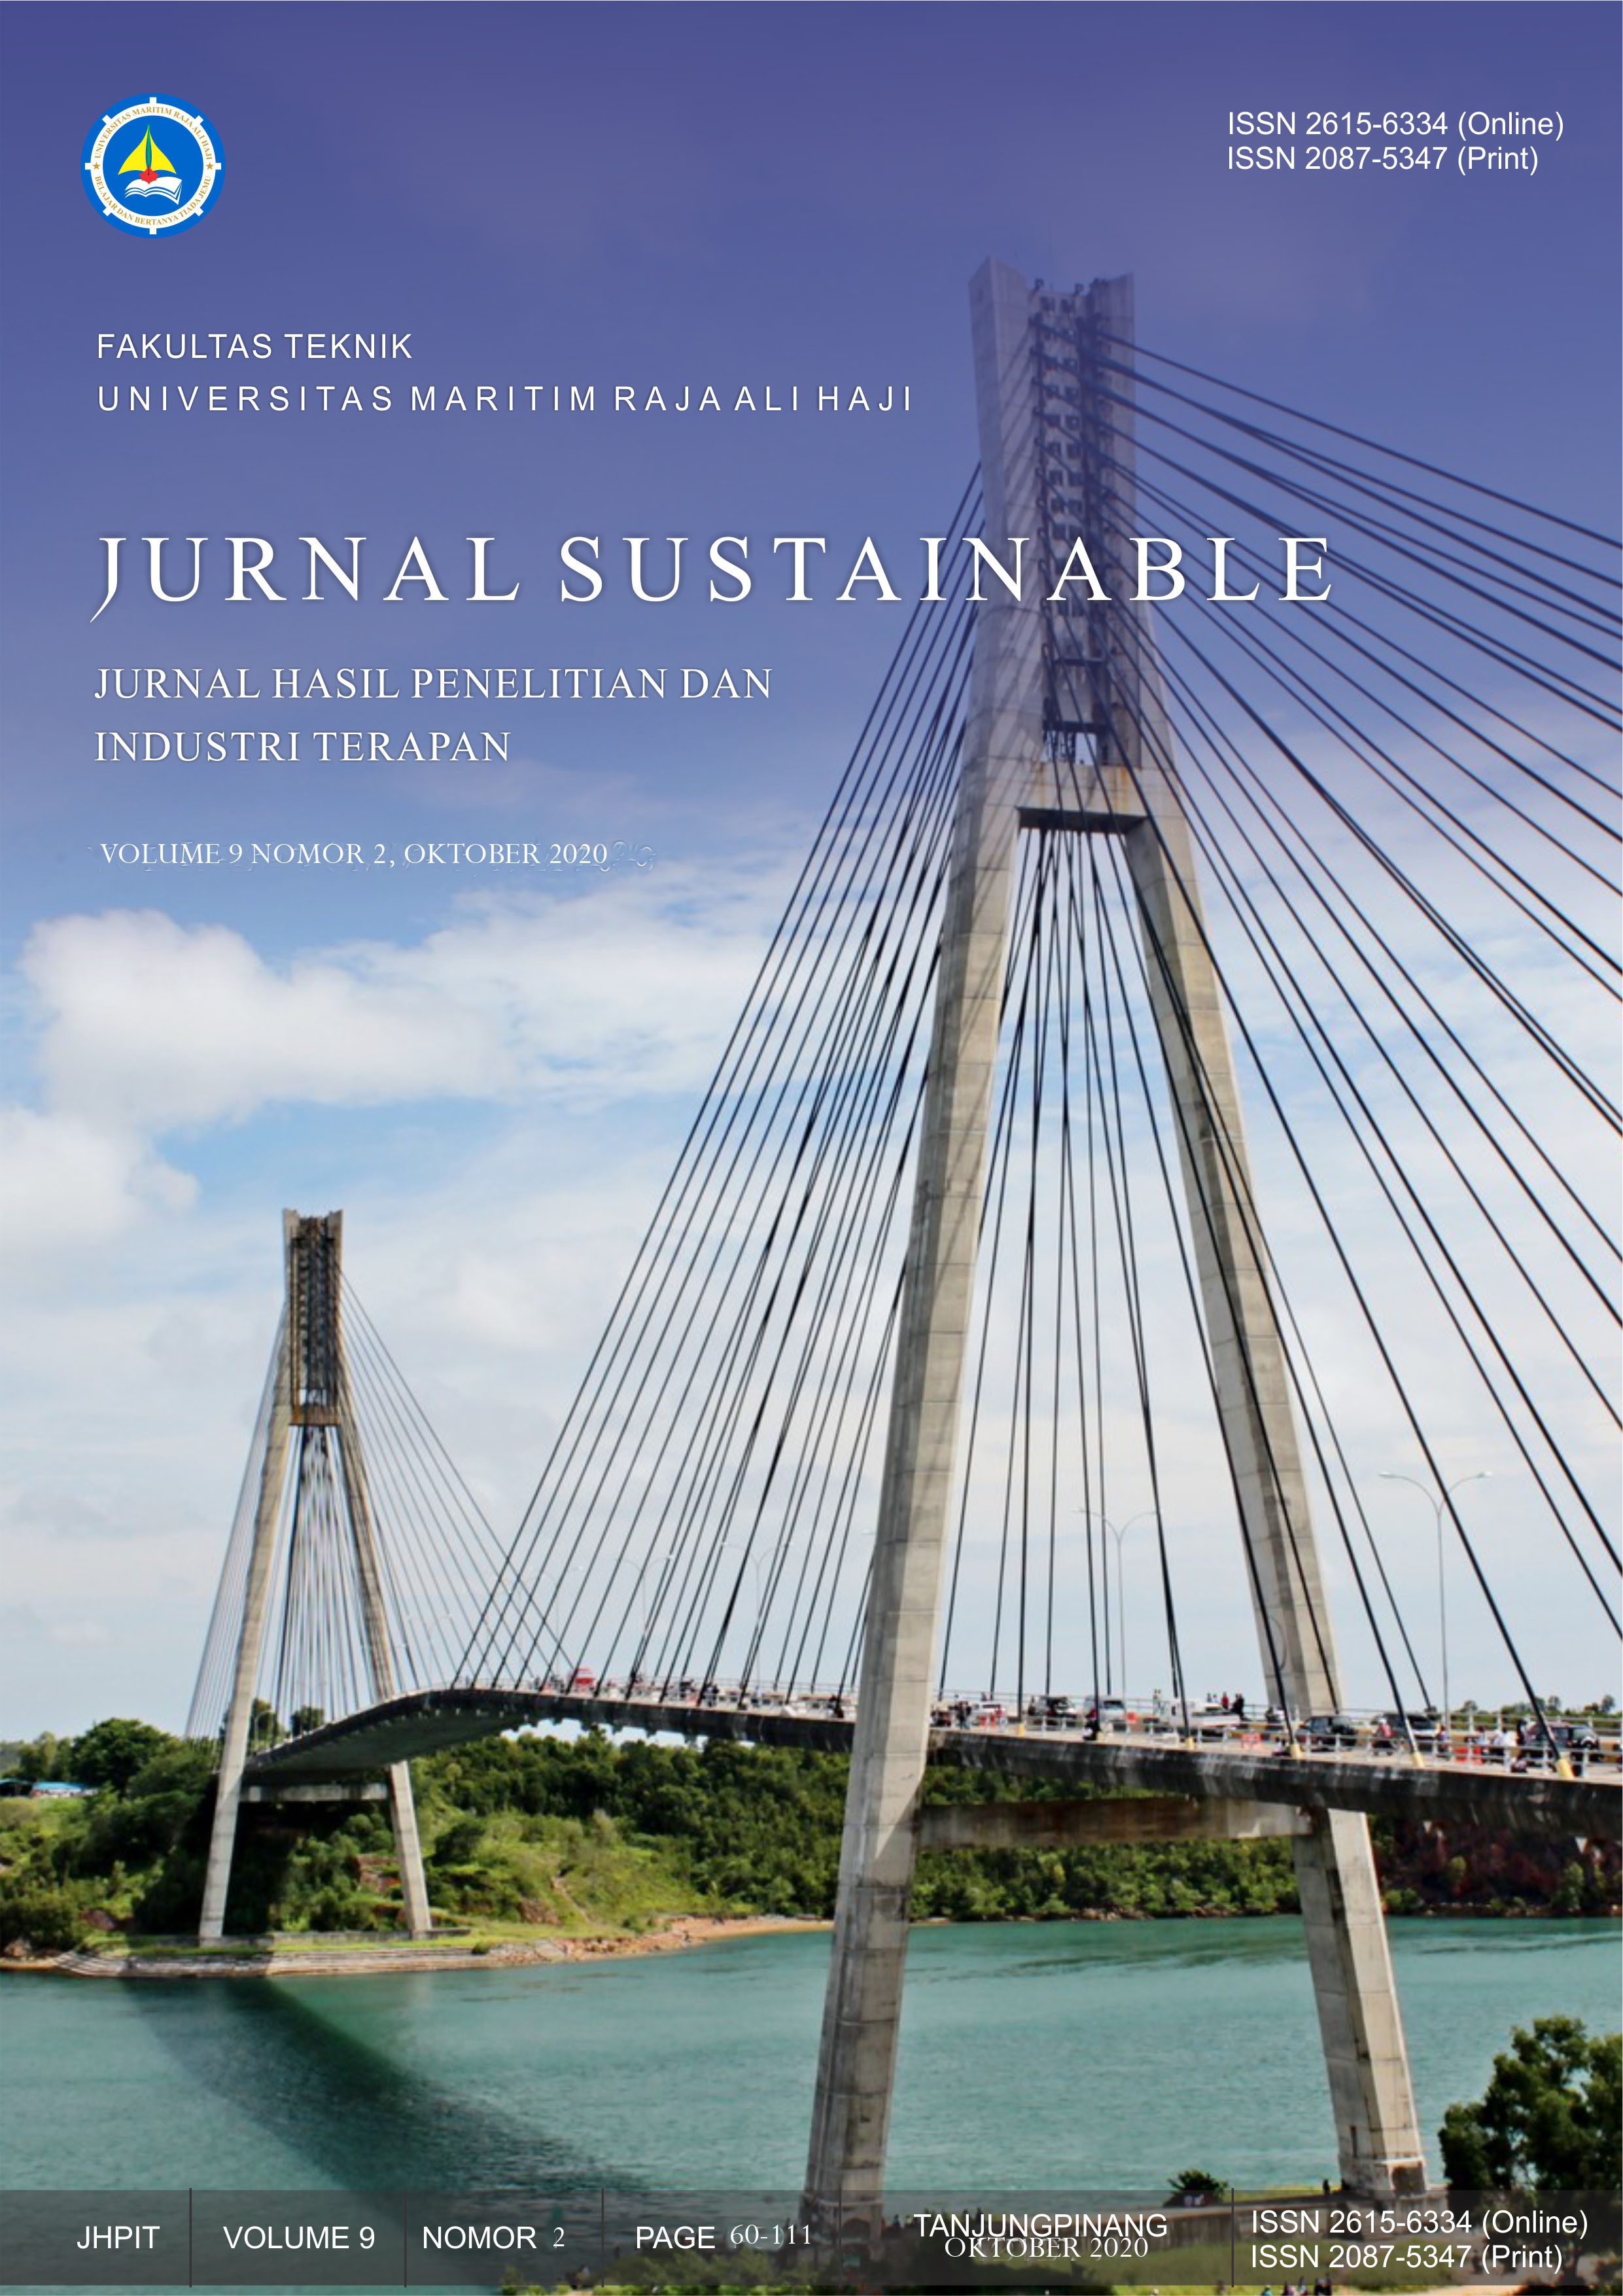 					View Vol. 9 No. 2 (2020): Vol 9 No 2 (2020) : Jurnal Sustainable : Jurnal Hasil Penelitian dan Industri Terapan
				